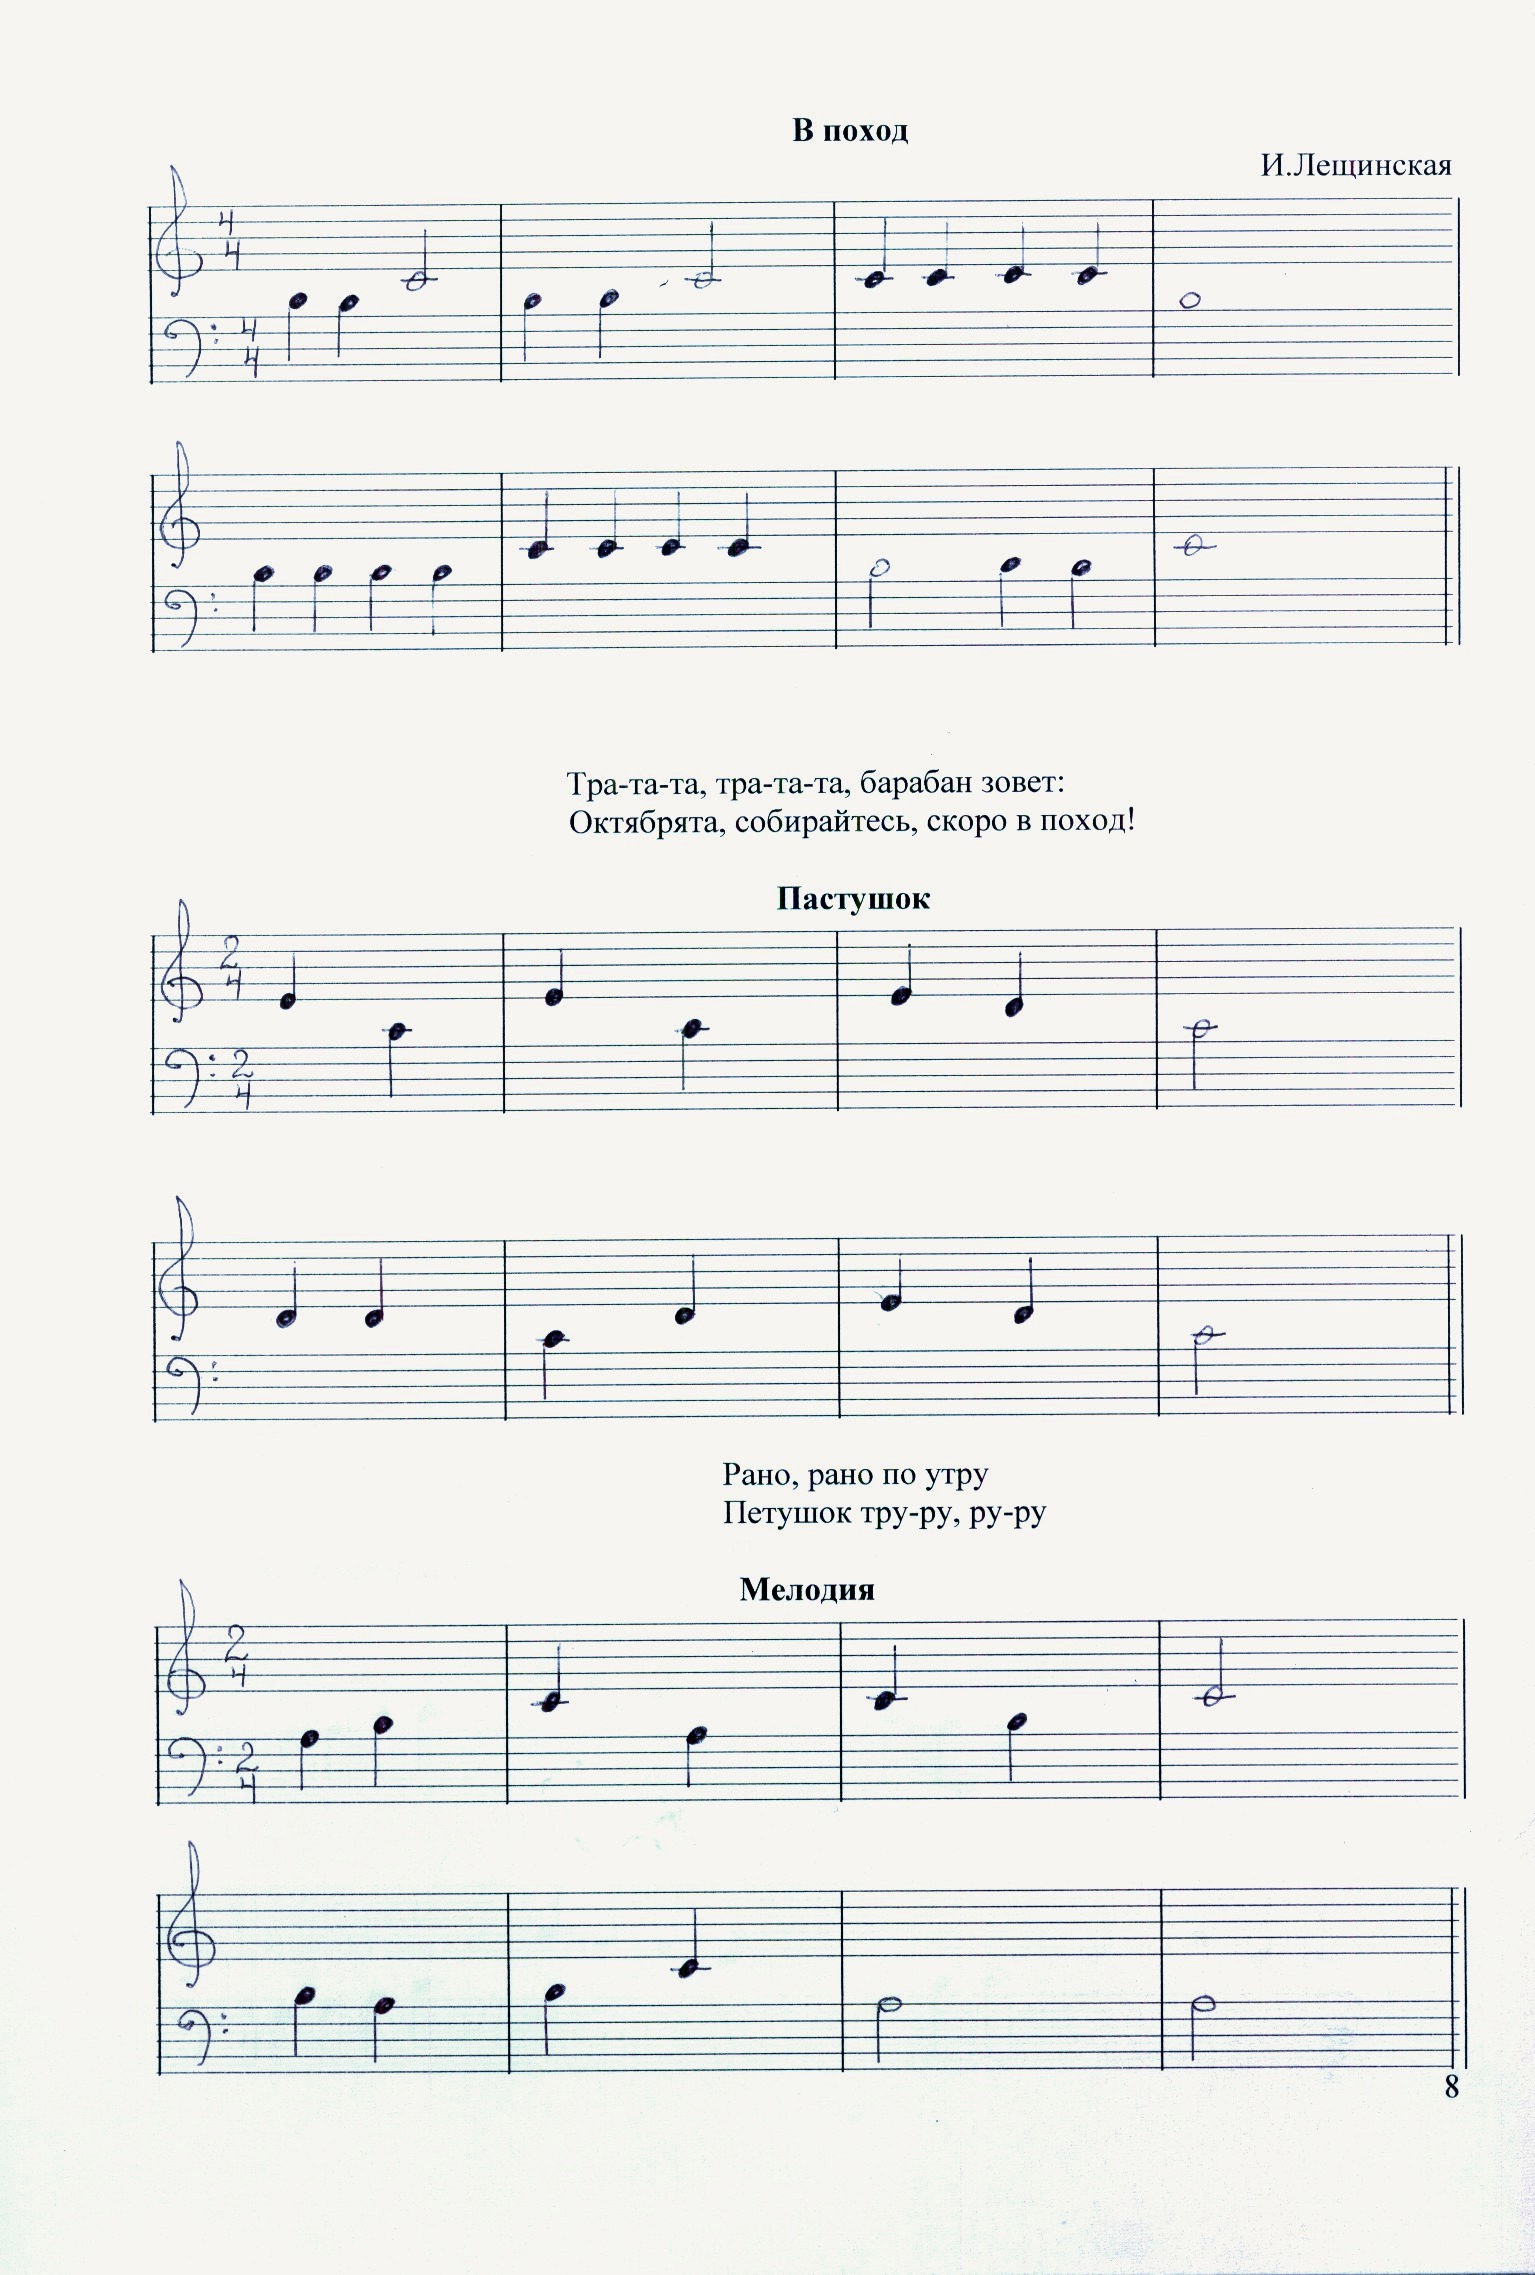 Учебно-методическое пособие Упражнения для начинающих пианистов